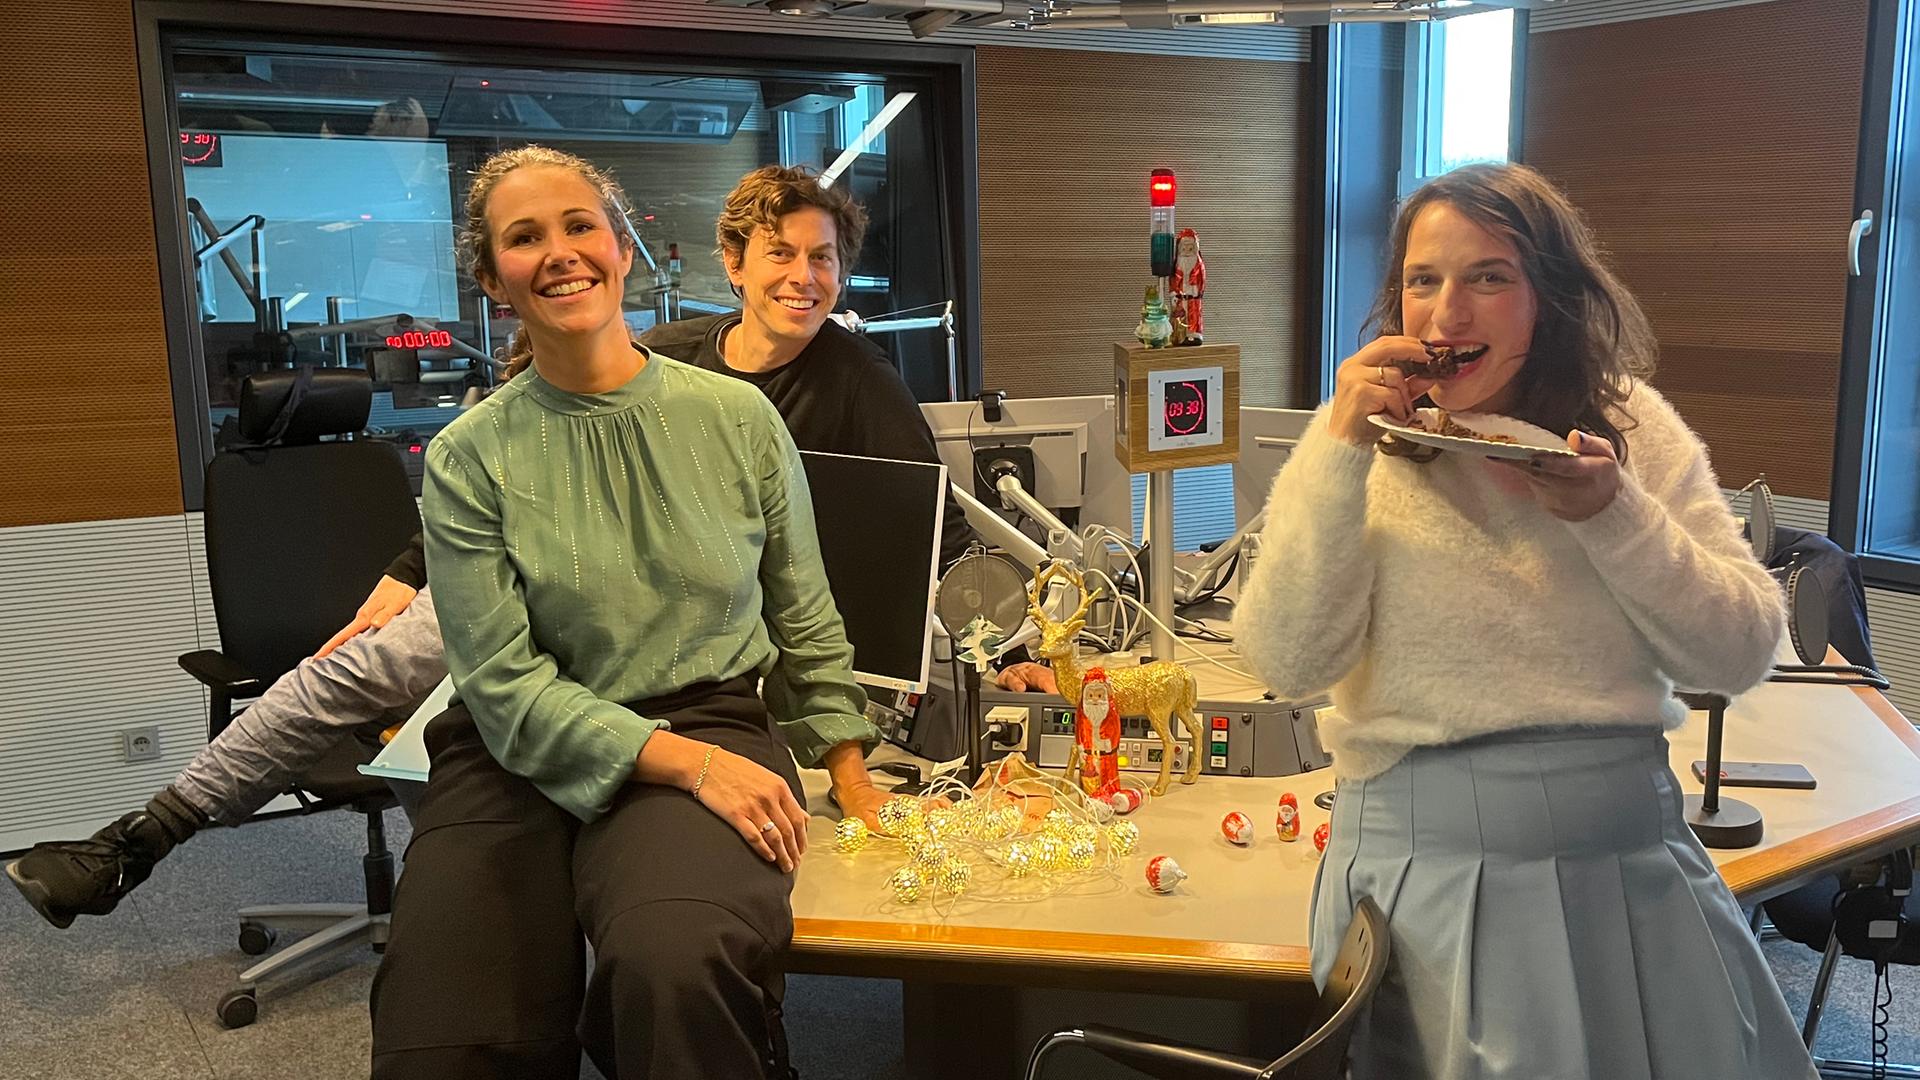 Sonja Koppitz, Utz Dräger und Caro Korneli sitzen auf dem Studiotisch. In der Mitte stehen Bildschirme und Mikrofone. Caro Korneli beißt in ein Stück Kuchen.